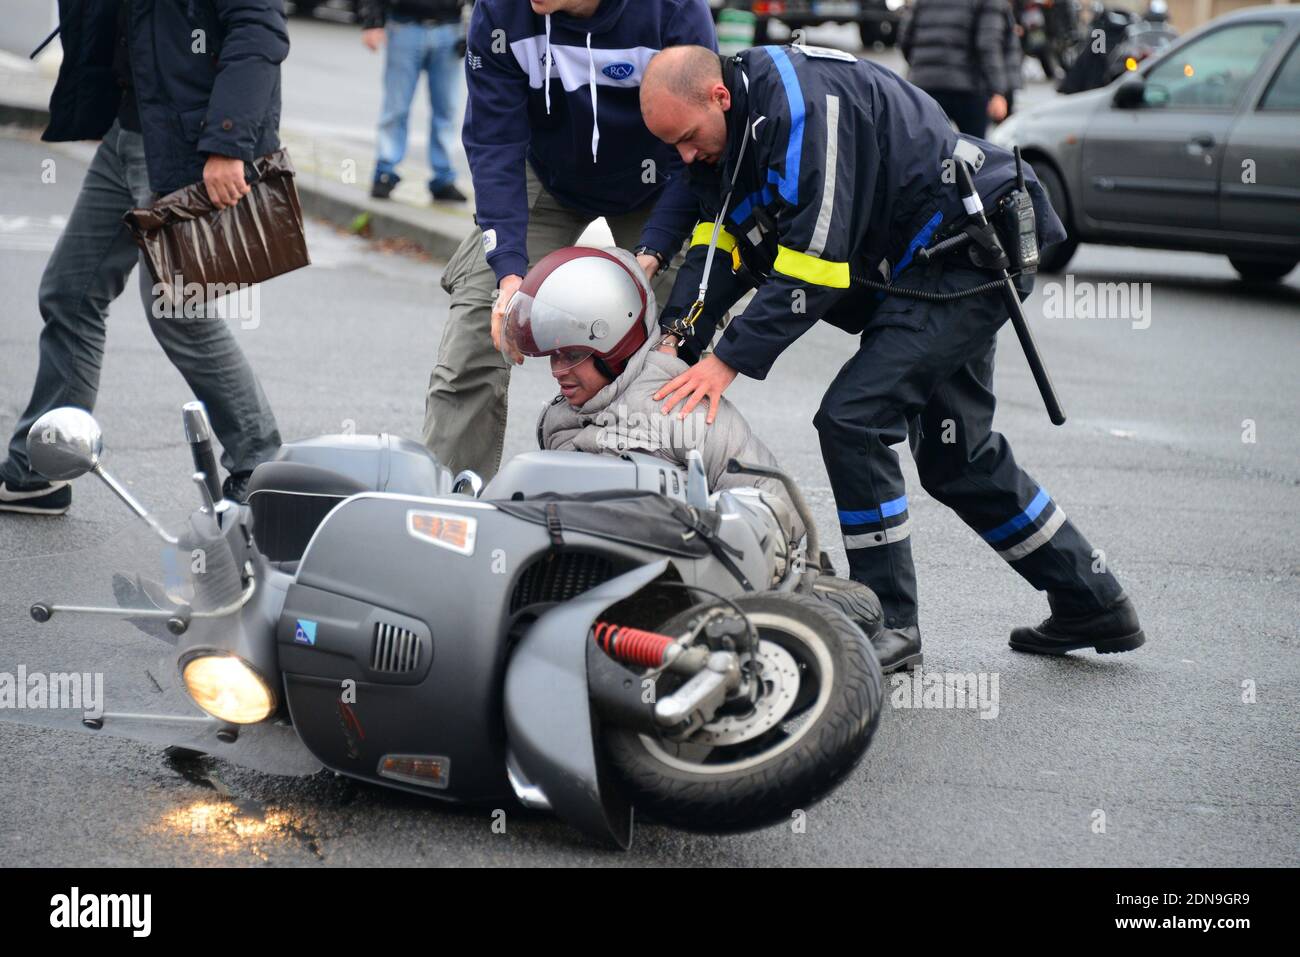 Les policiers arrêtent deux personnes sur un scooter au point d'arme, alors  qu'elles arrivent près de la scène de la prise d'otages à porte de Vincennes,  à l'est de Paris, en France,